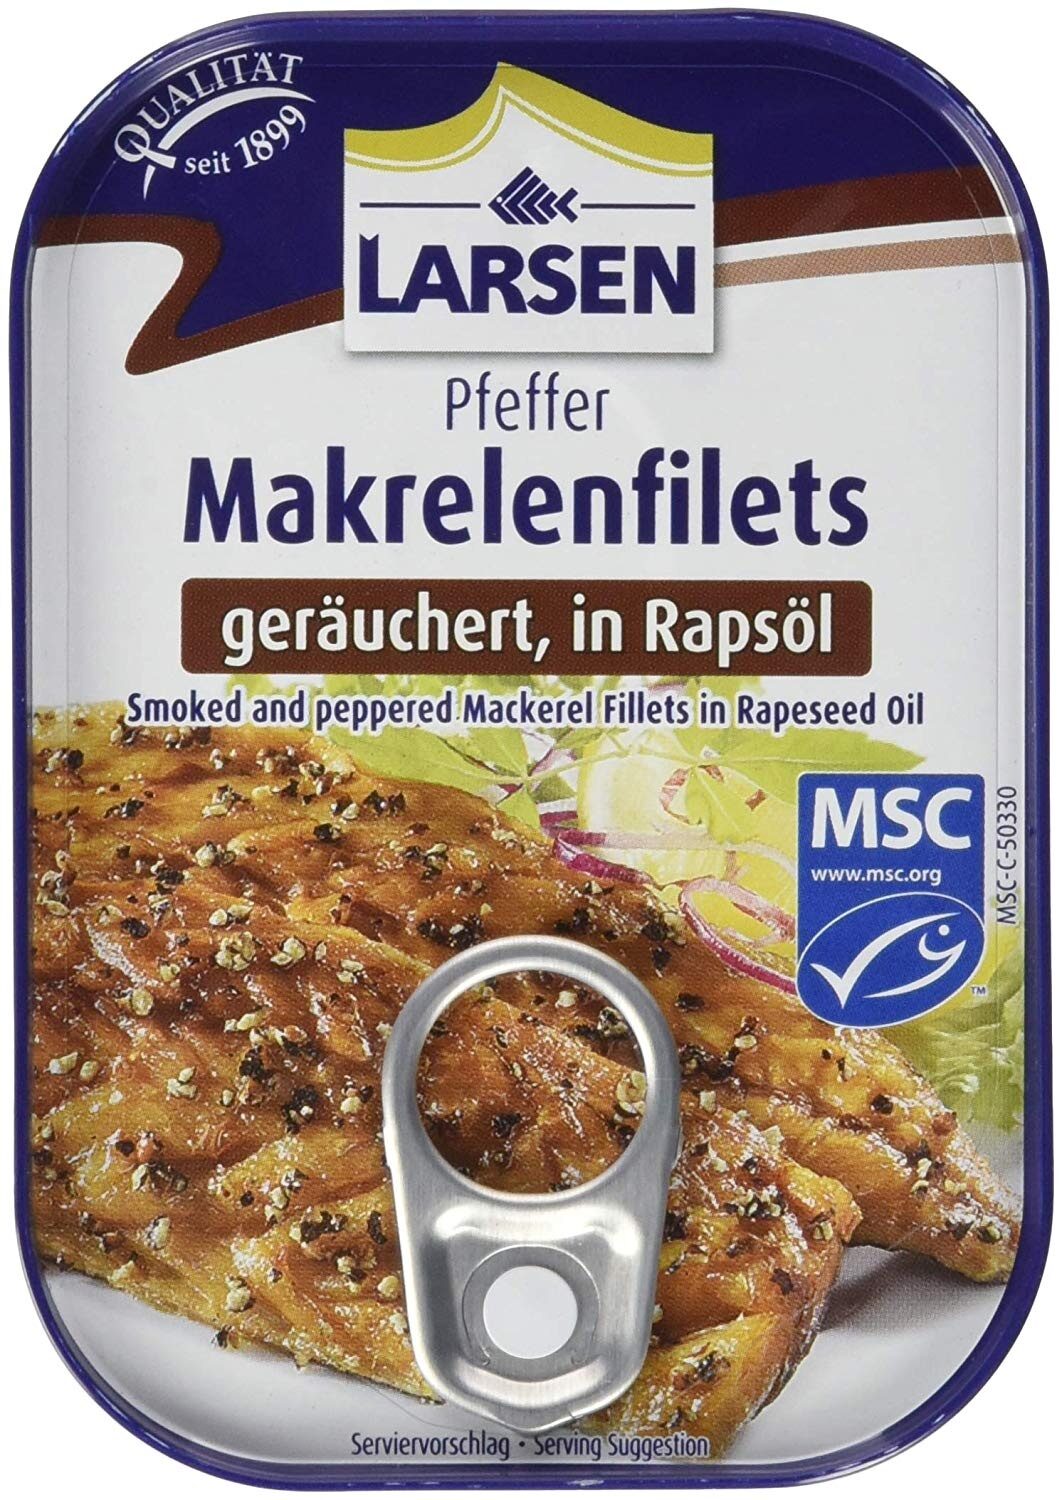 Pfeffer Makrelenfilets - Product - de